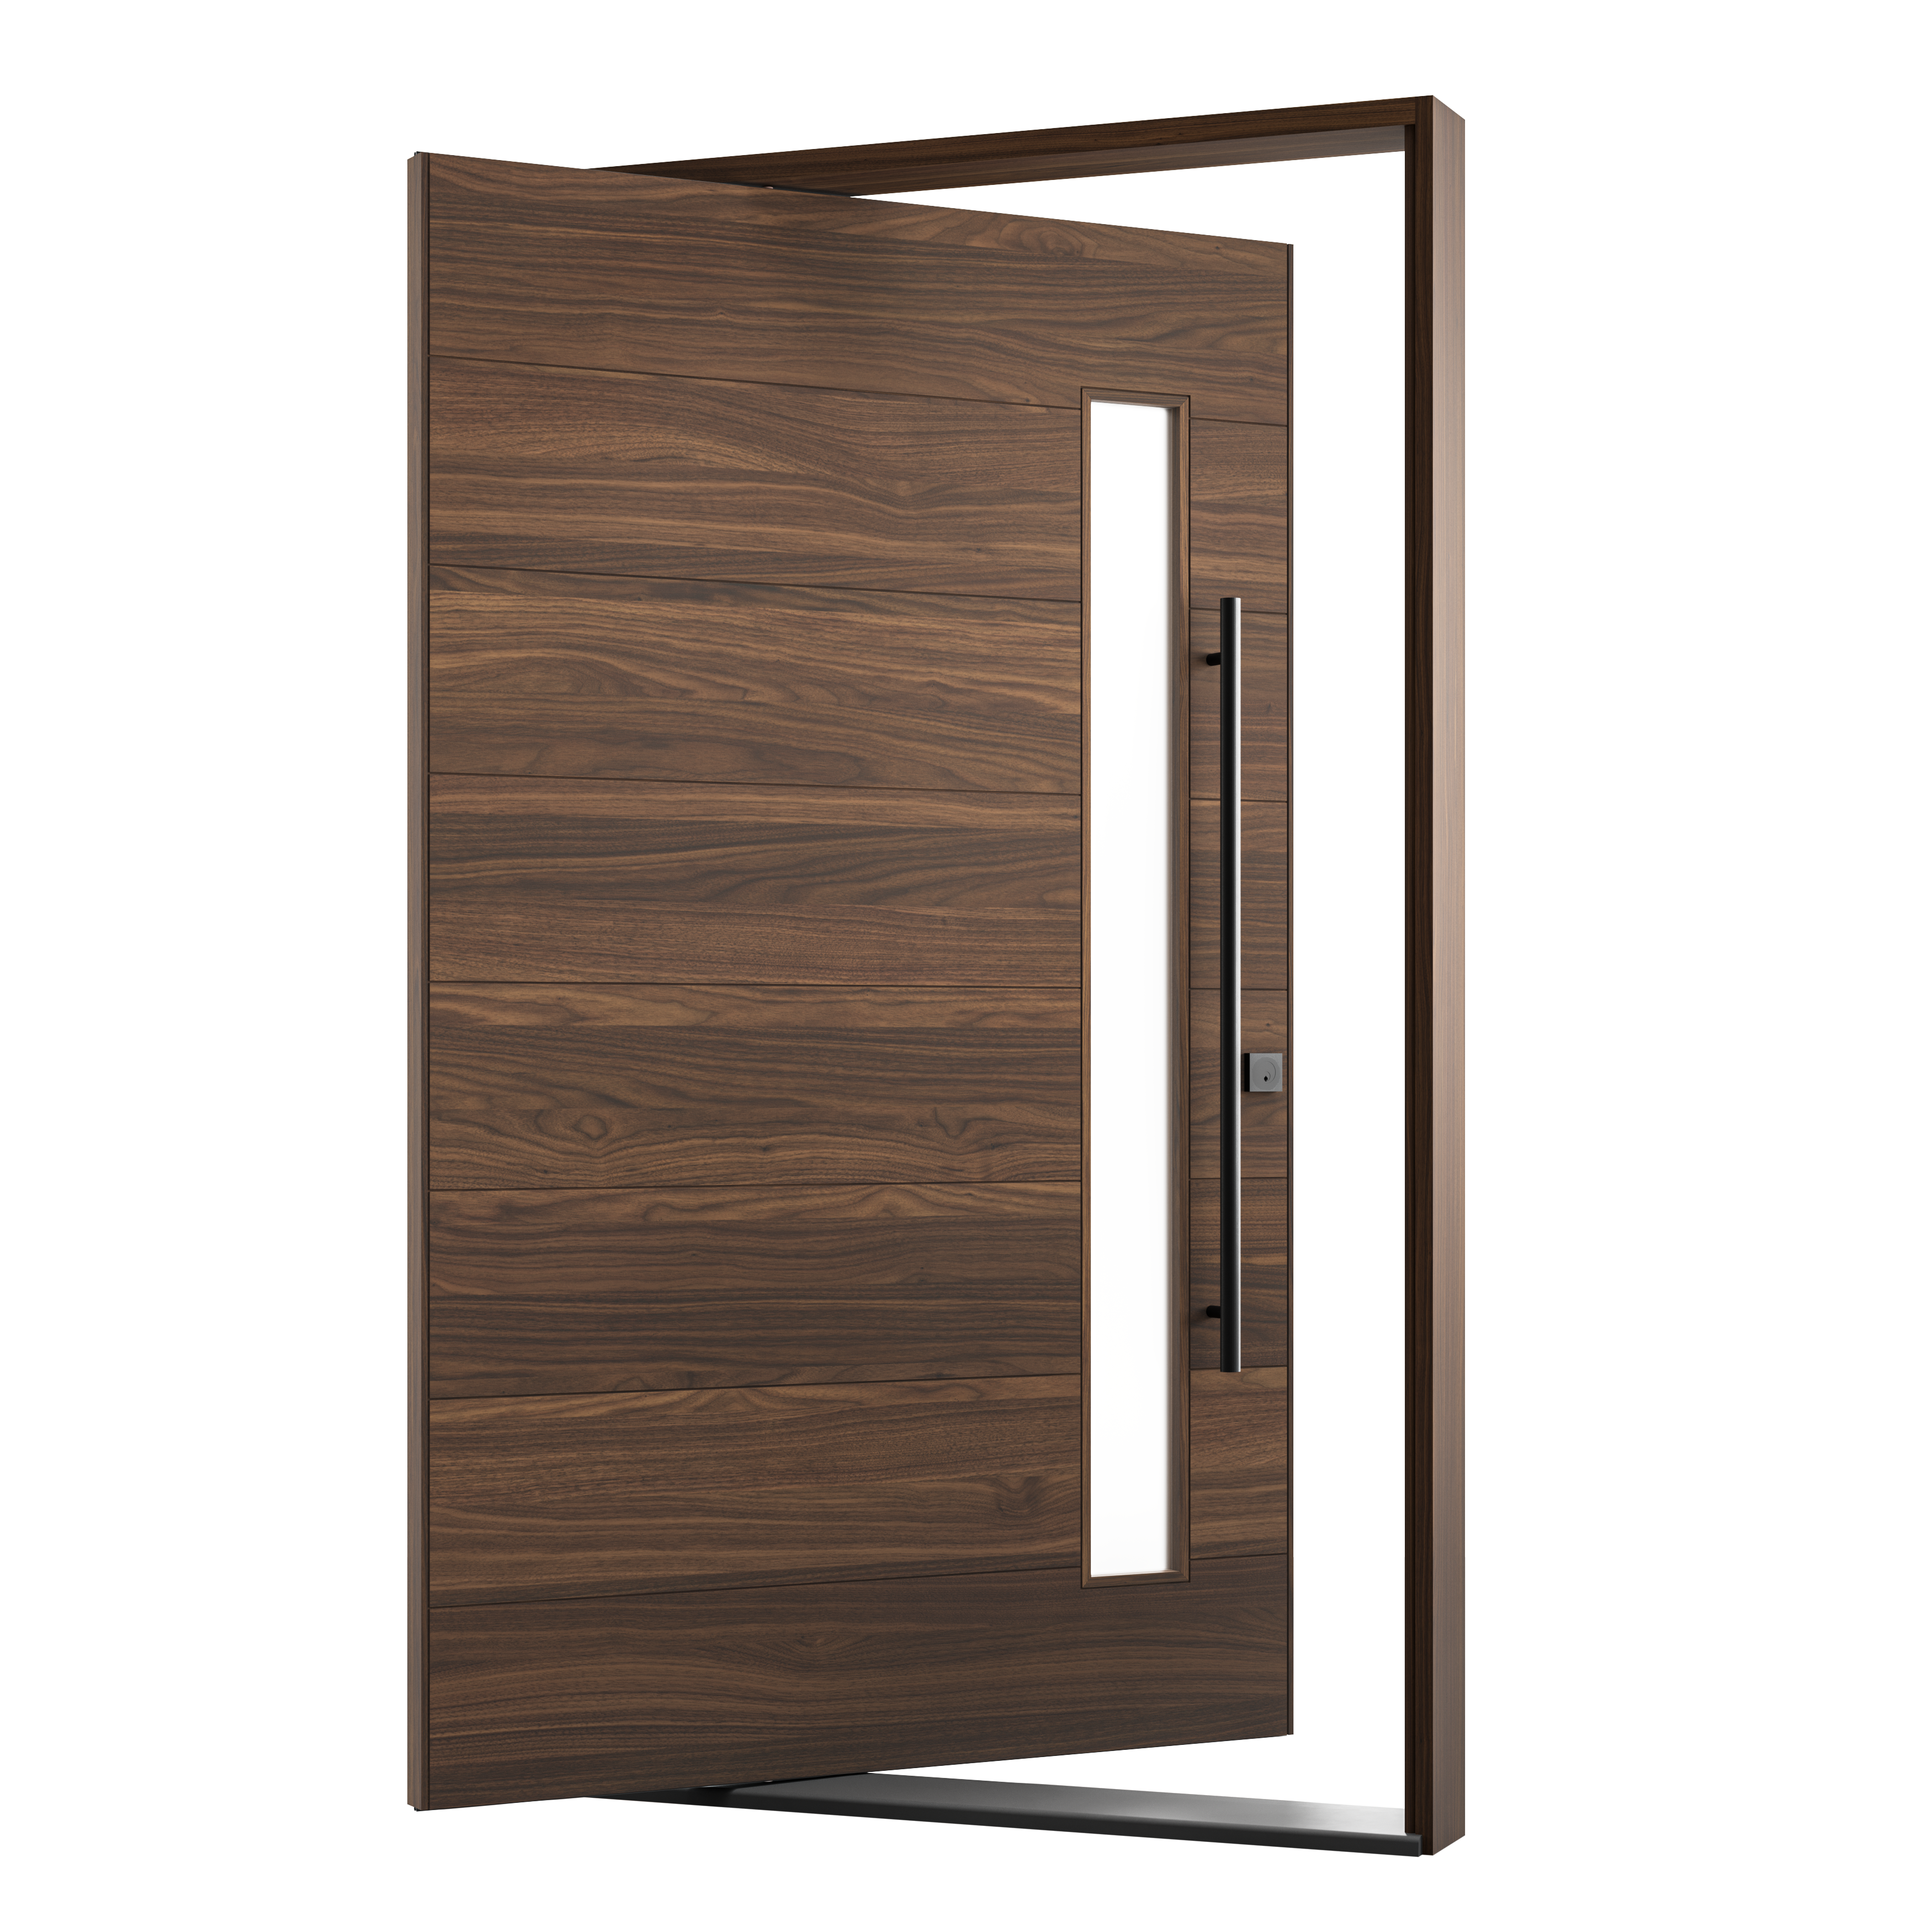 PROJECT DOOR RUSH-EXTERIOR – Design Is Personal